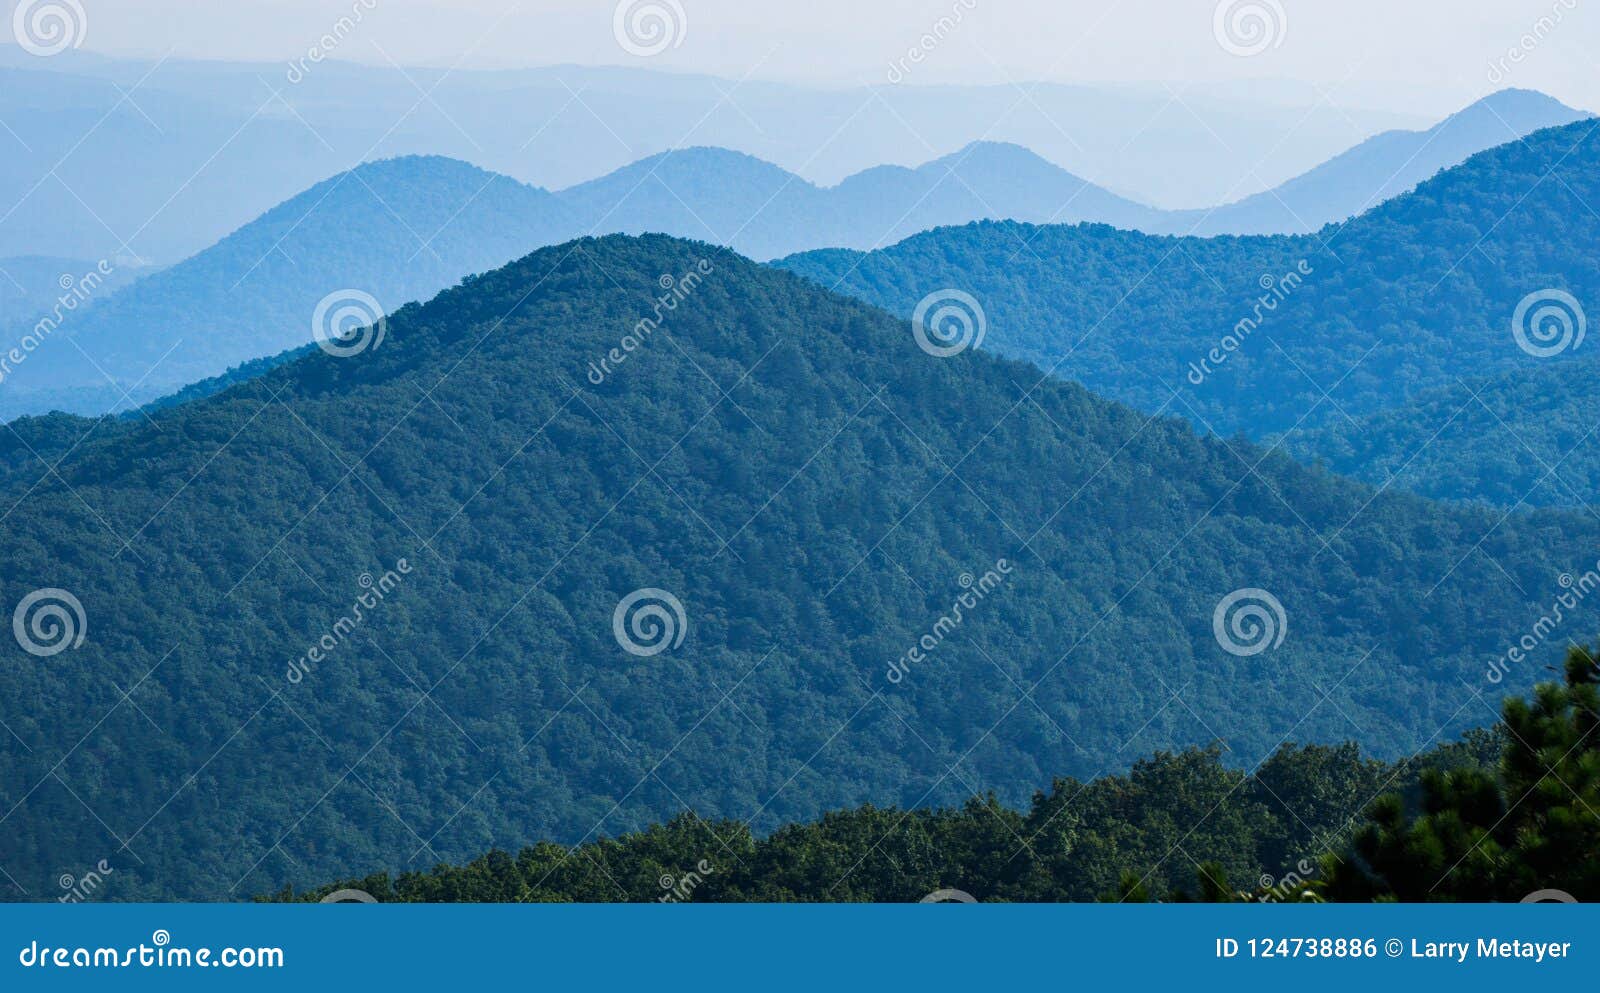 hazy view of the blue ridge mountains, virginia, usa